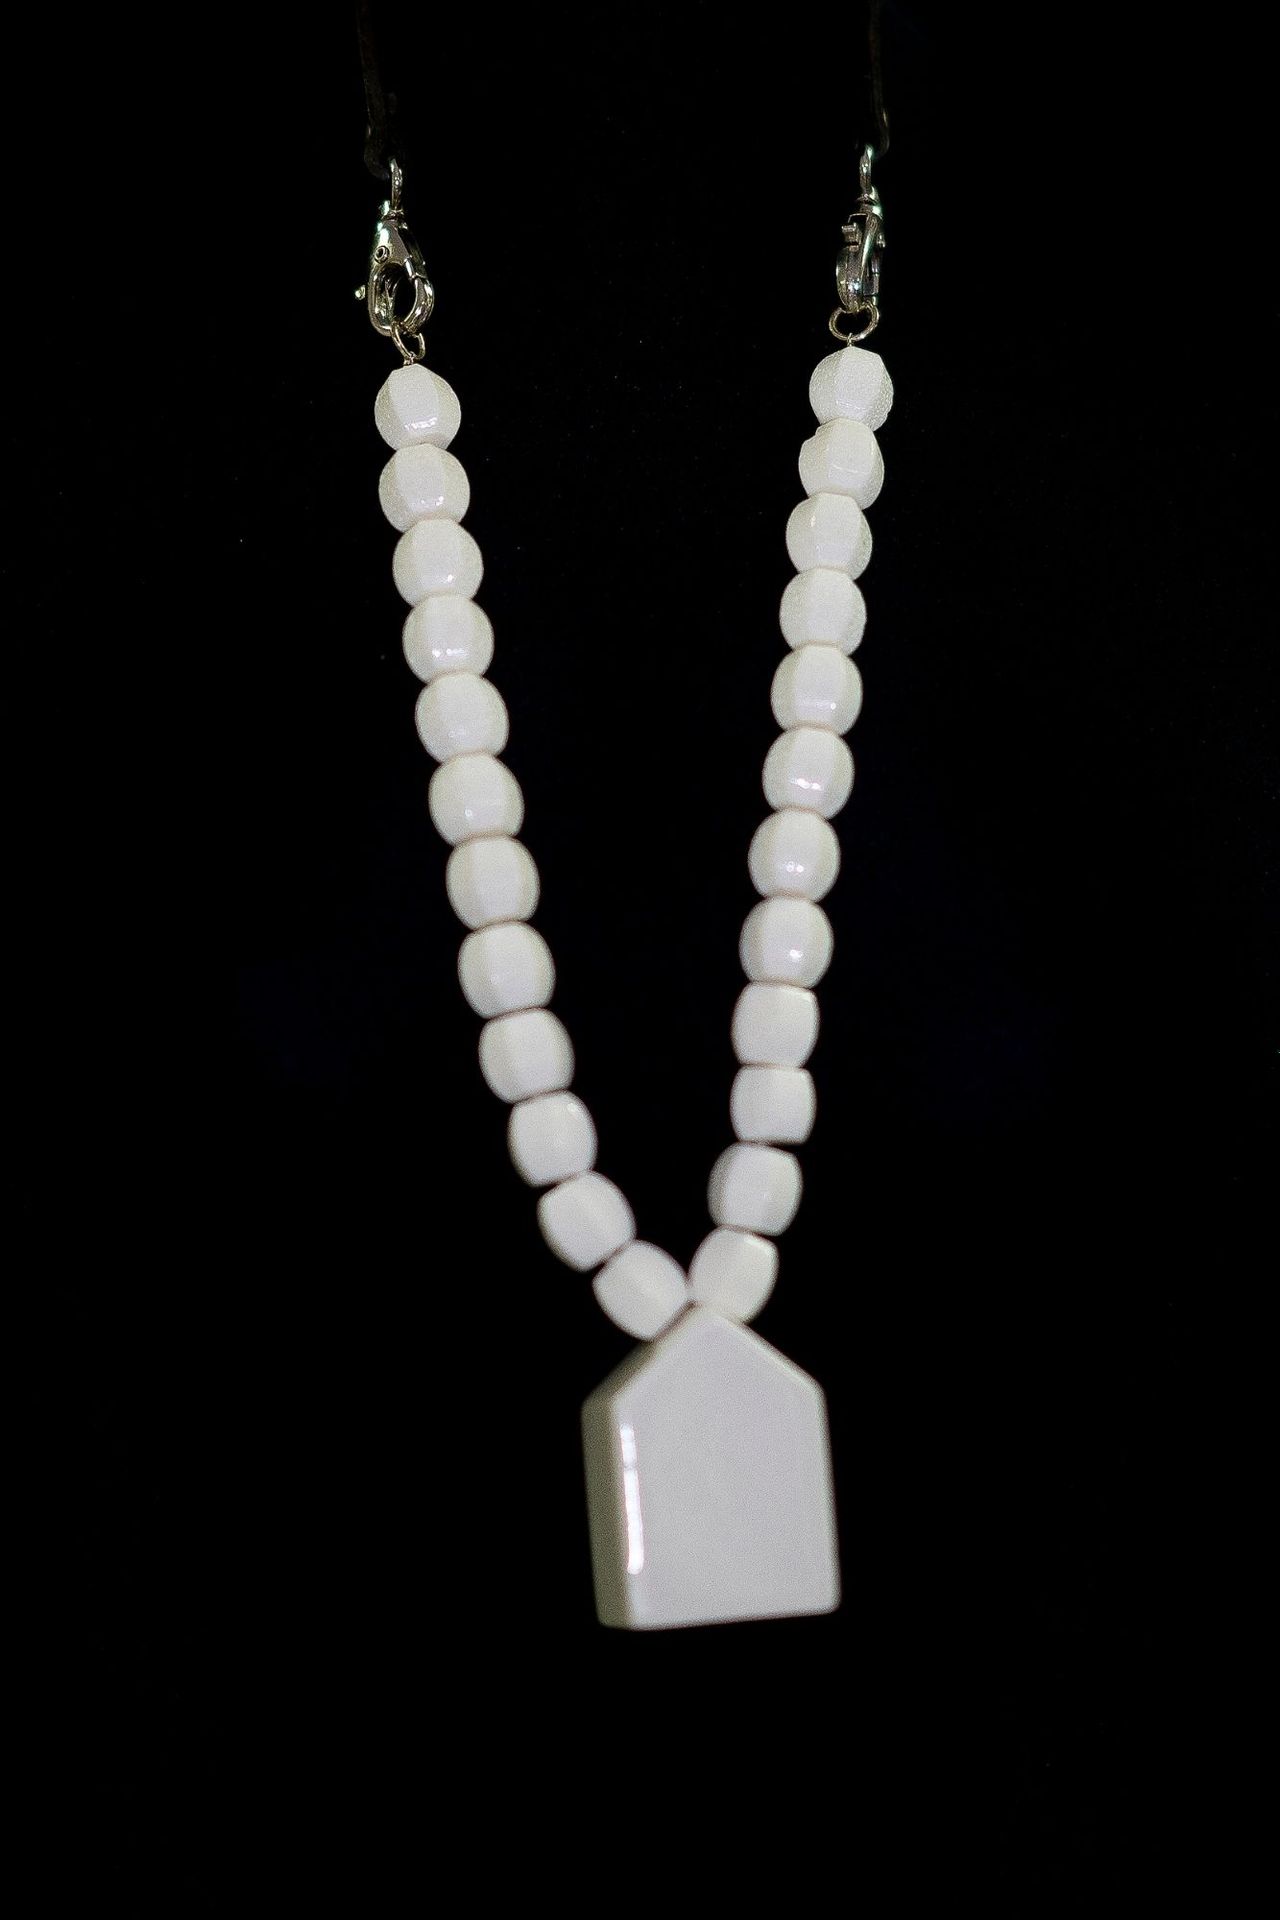 Frédéric HUBIN Maison "项链

八角形珍珠制成的中长项链，装饰有陶瓷Maison吊坠和黑色皮革表带。